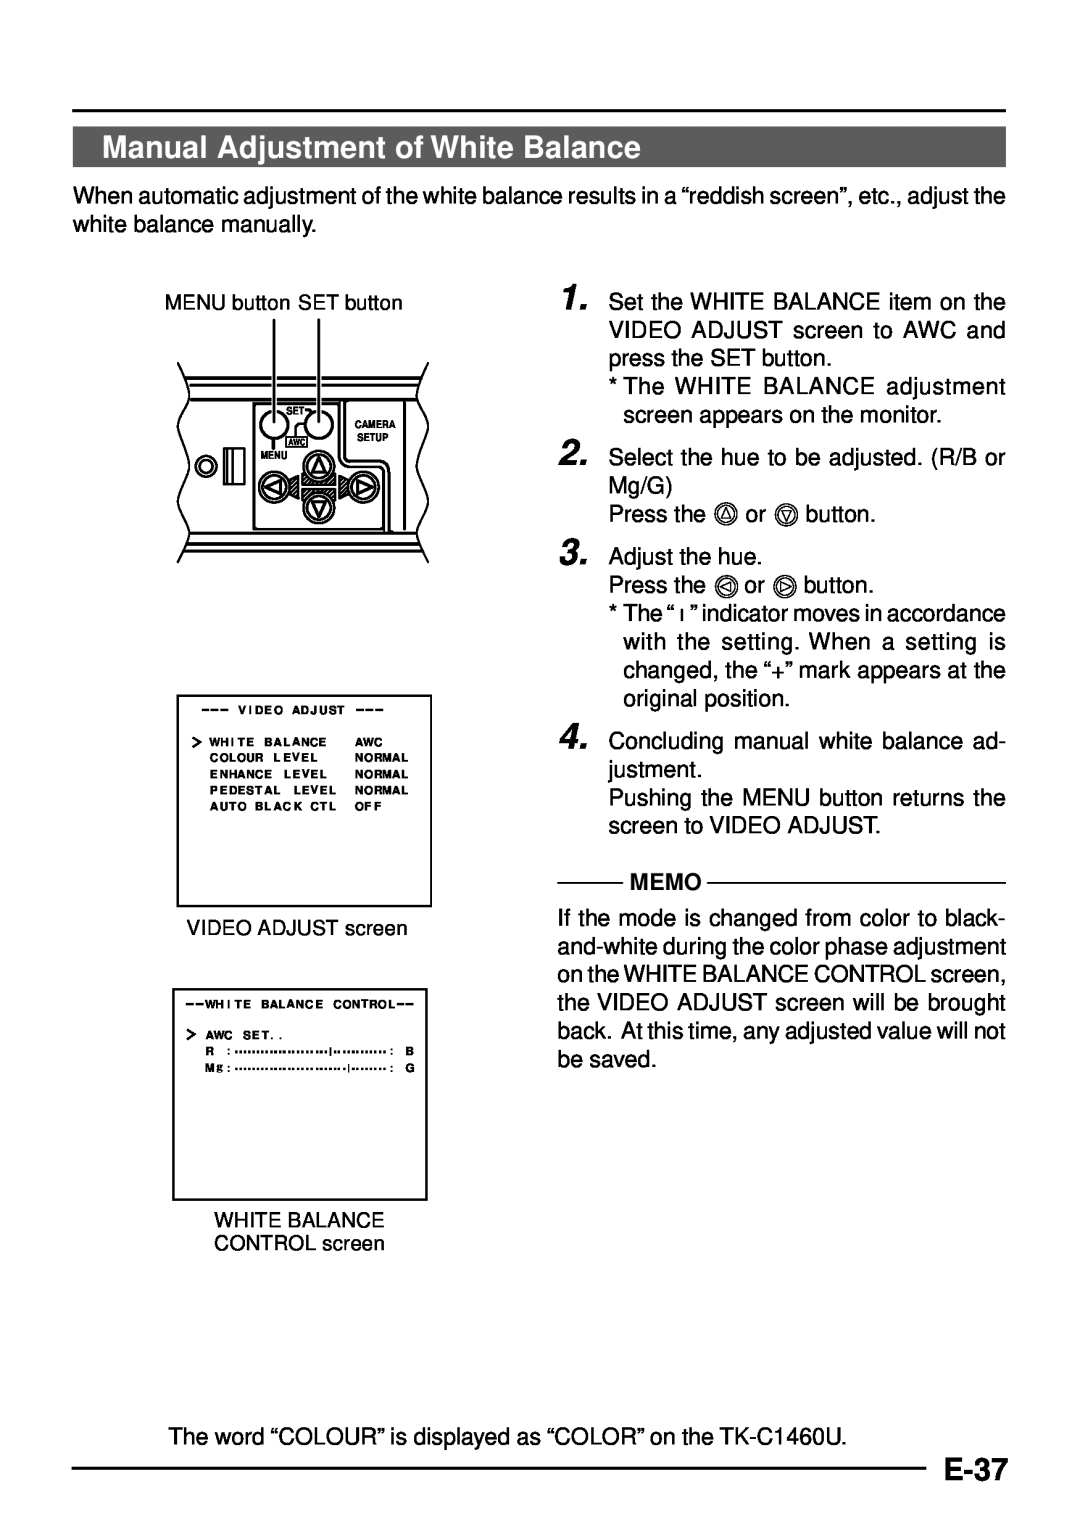 JVC TK-C1460 manual Manual Adjustment of White Balance, E-37, Memo 